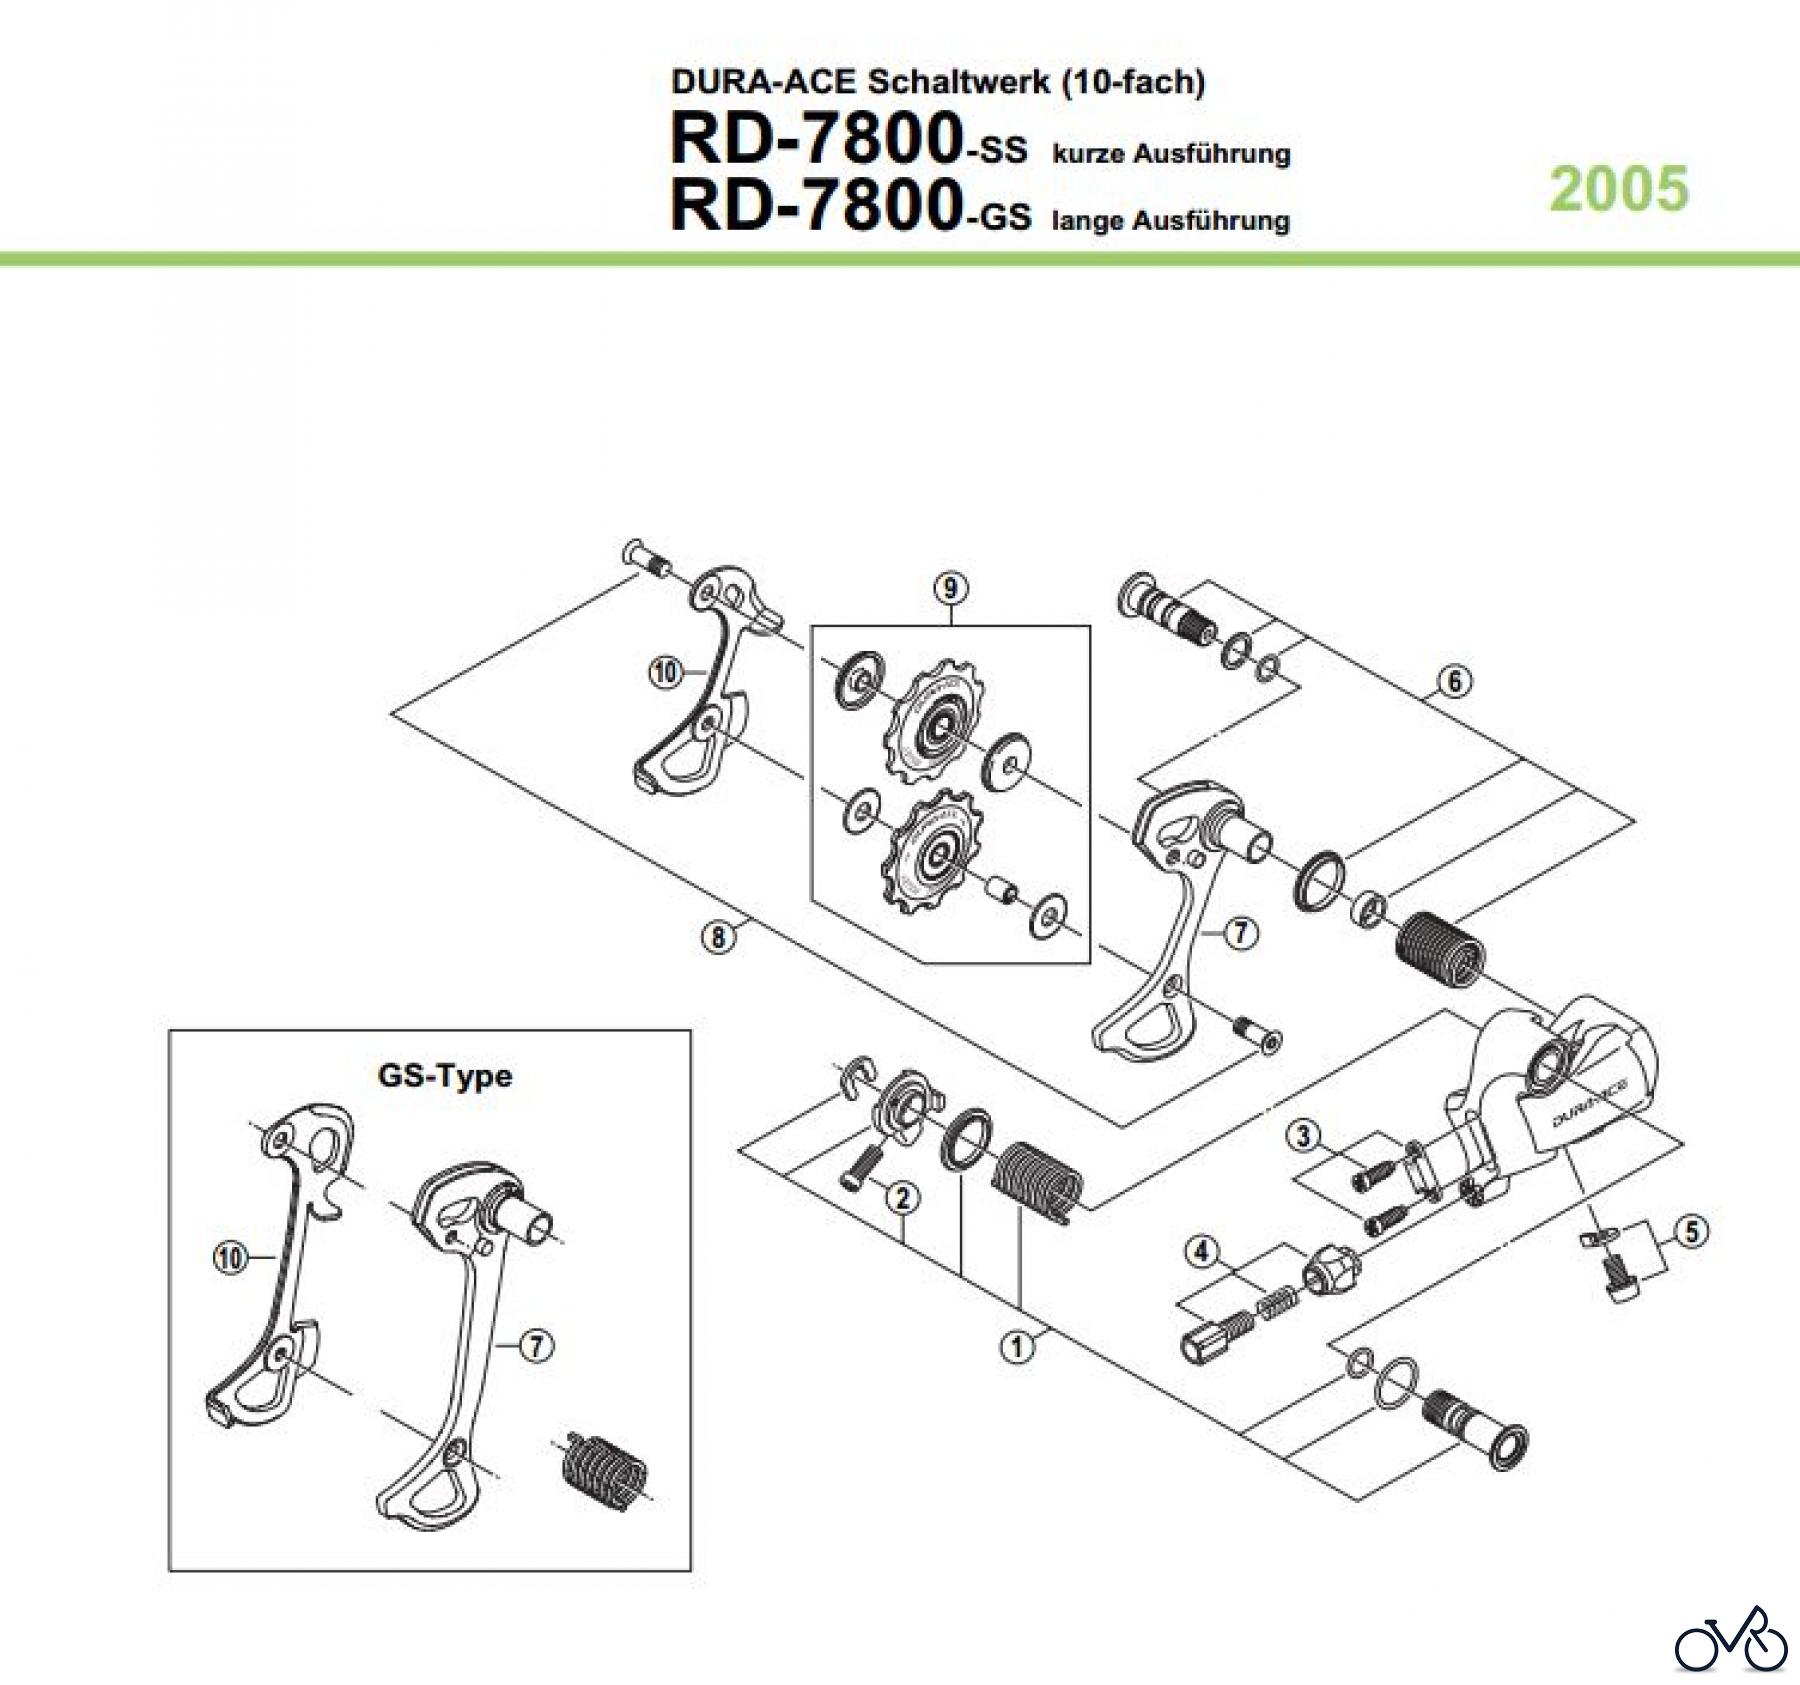  Shimano RD Rear Derailleur - Schaltwerk RD-7800-05